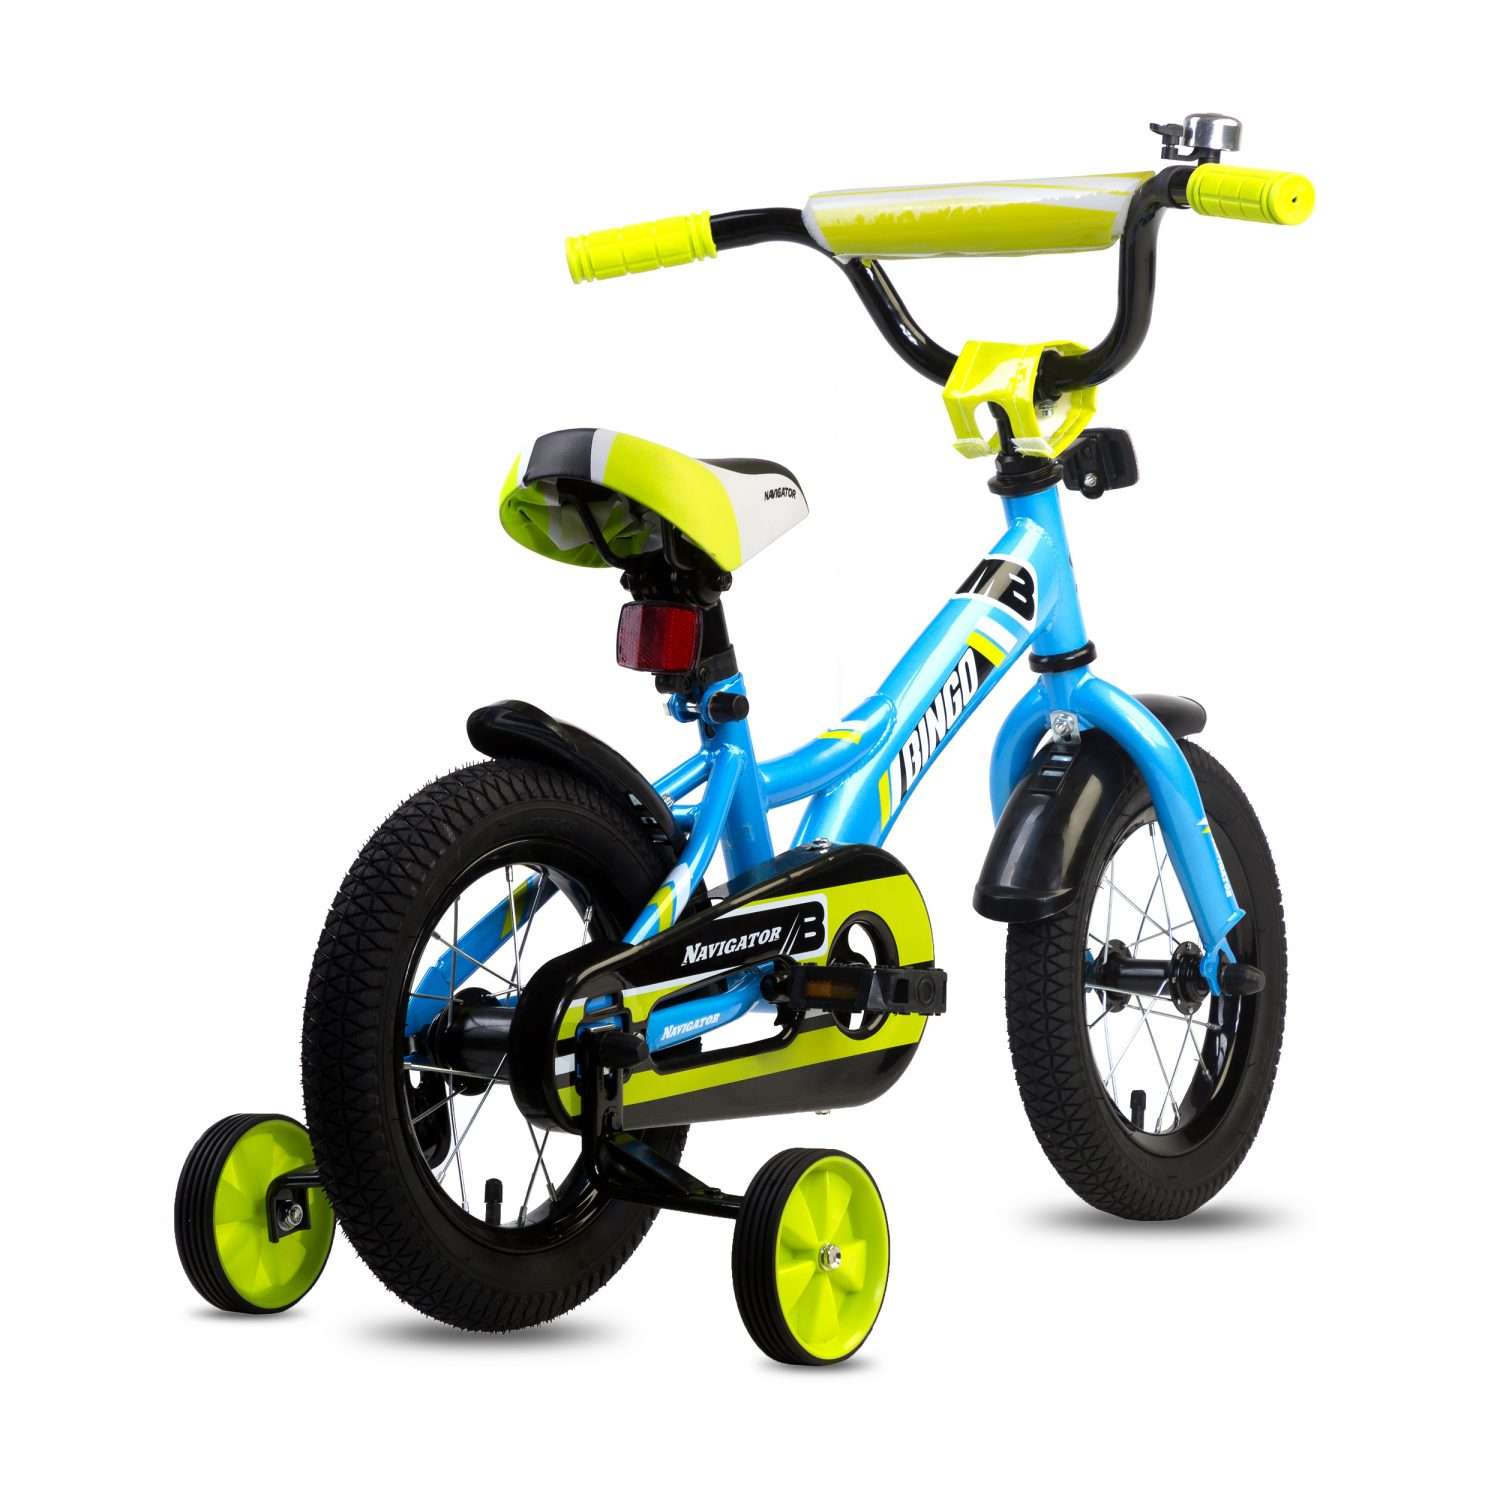 Детский велосипед от 3 лет для мальчика. Детский велосипед, Navigator Bingo, колеса 12". Детский велосипед Navigator Bingo. Велосипед навигатор Bingo 12. Велосипед детский Navigator 12 дюймов голубой.